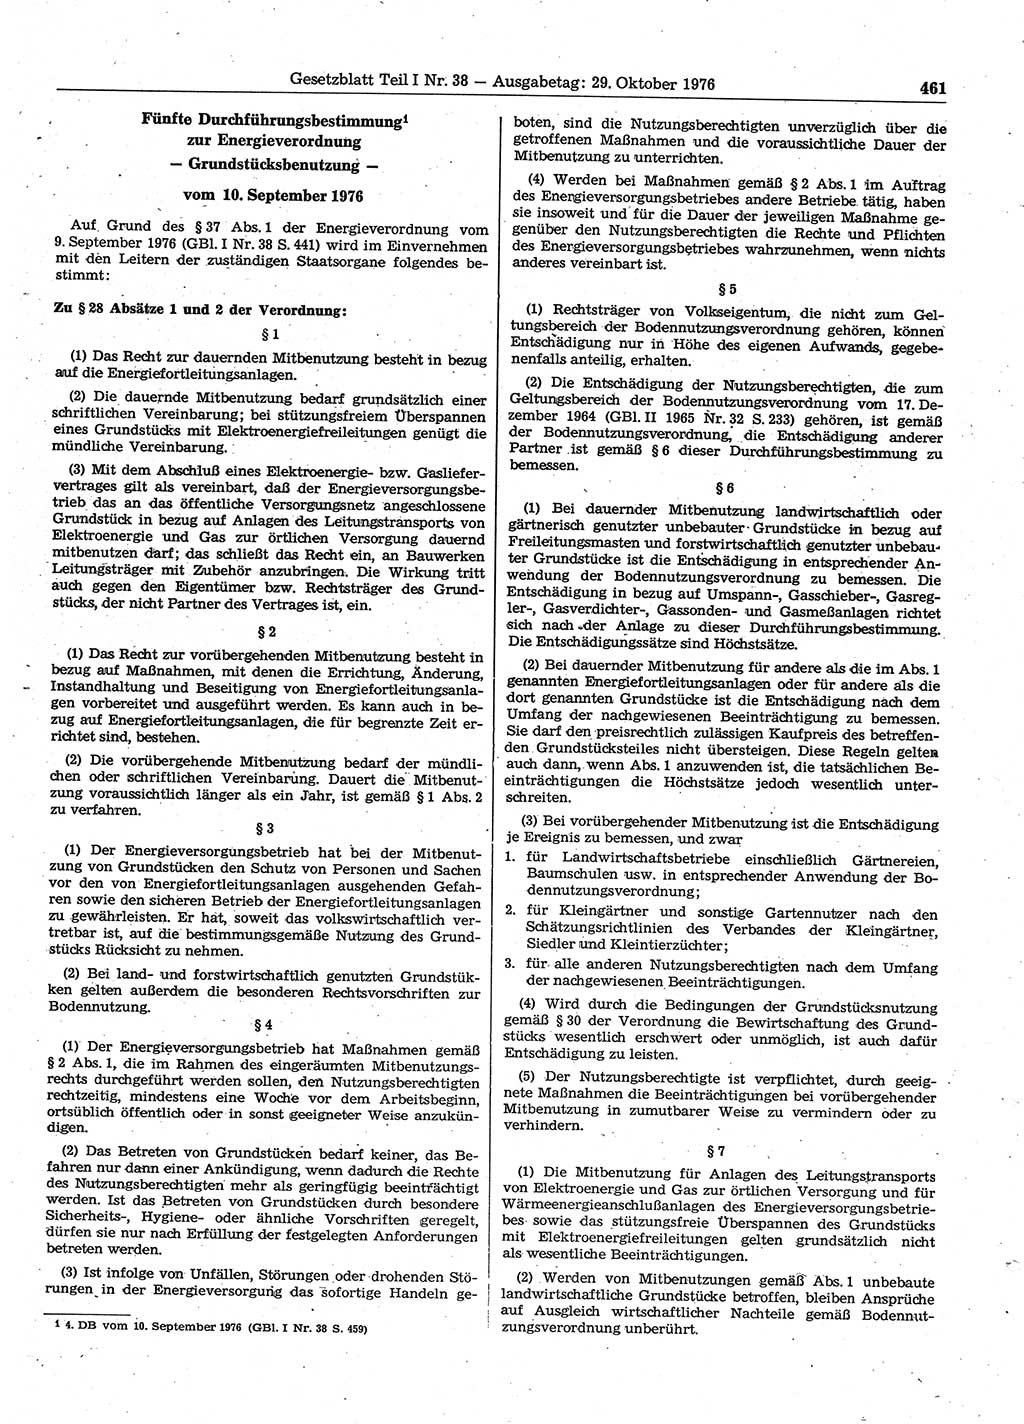 Gesetzblatt (GBl.) der Deutschen Demokratischen Republik (DDR) Teil Ⅰ 1976, Seite 461 (GBl. DDR Ⅰ 1976, S. 461)